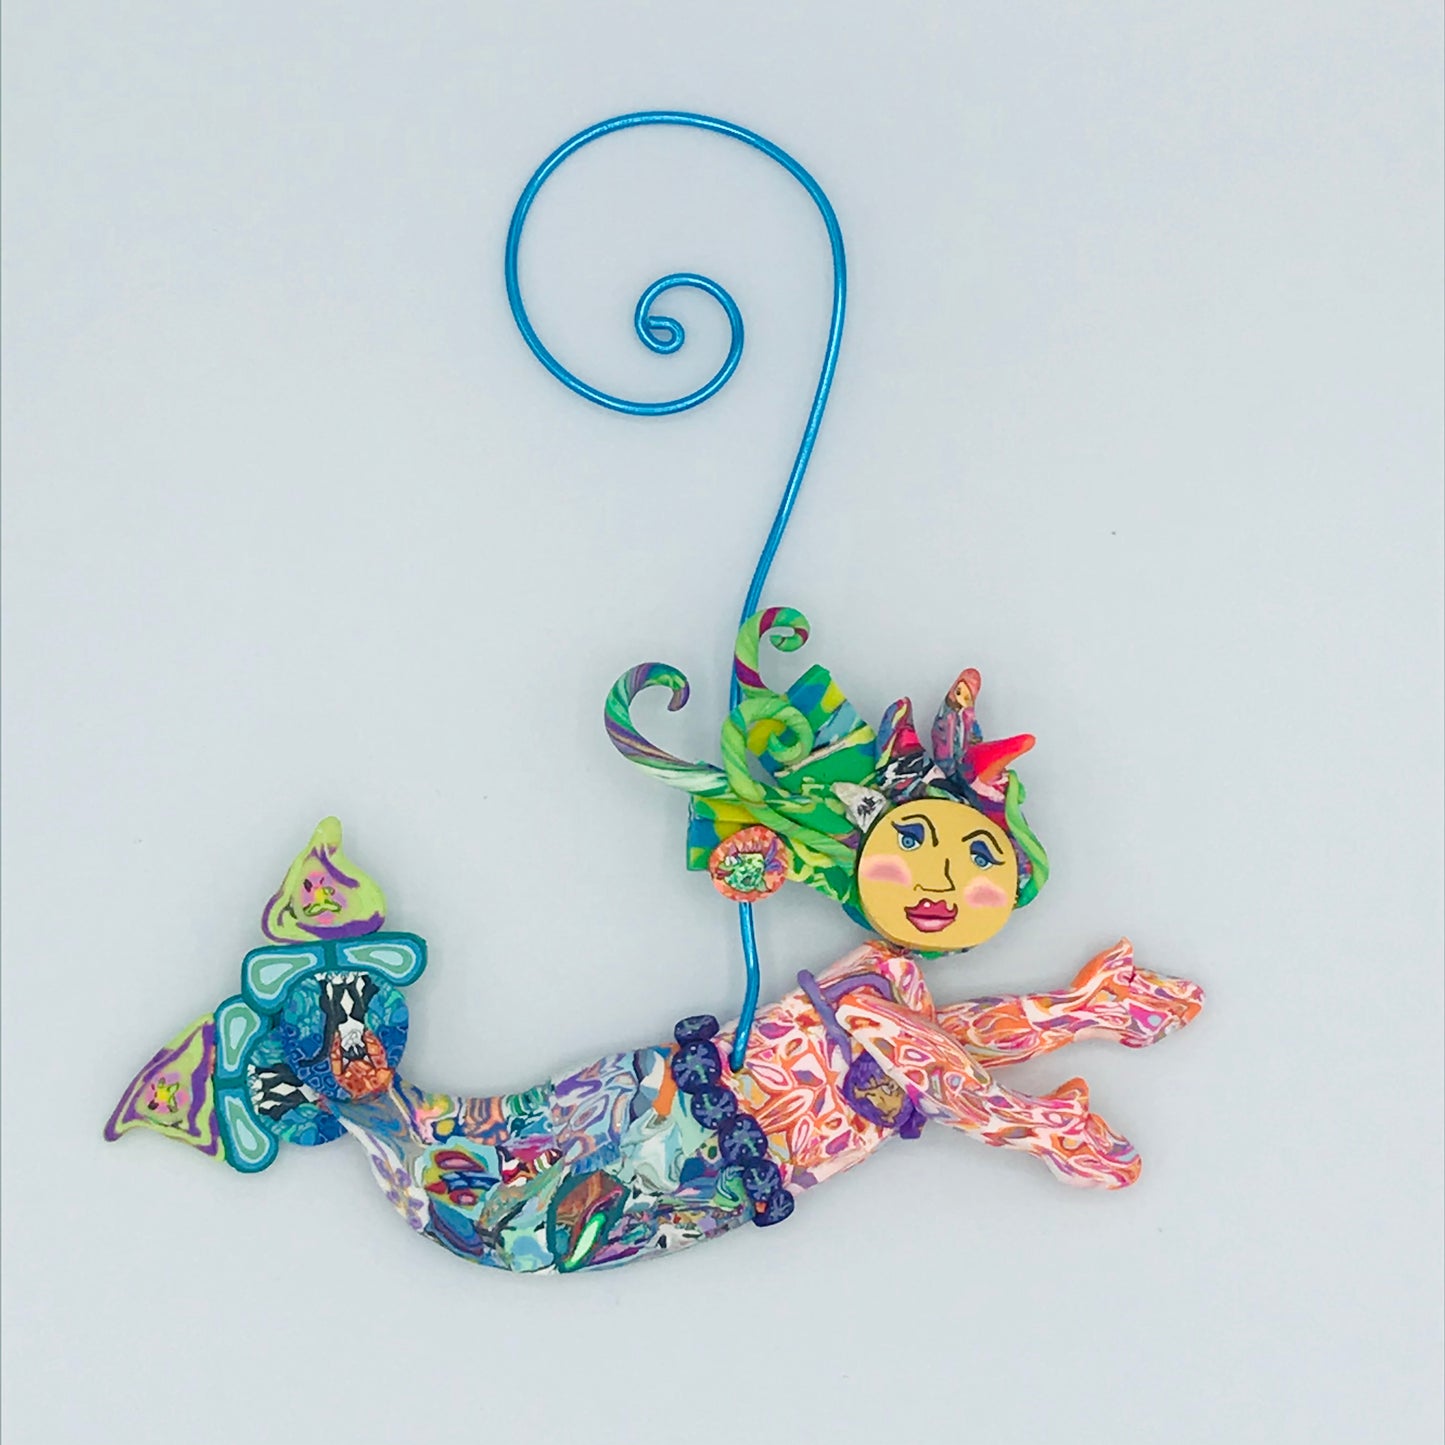 Mermaid Polymer Clay Ornament